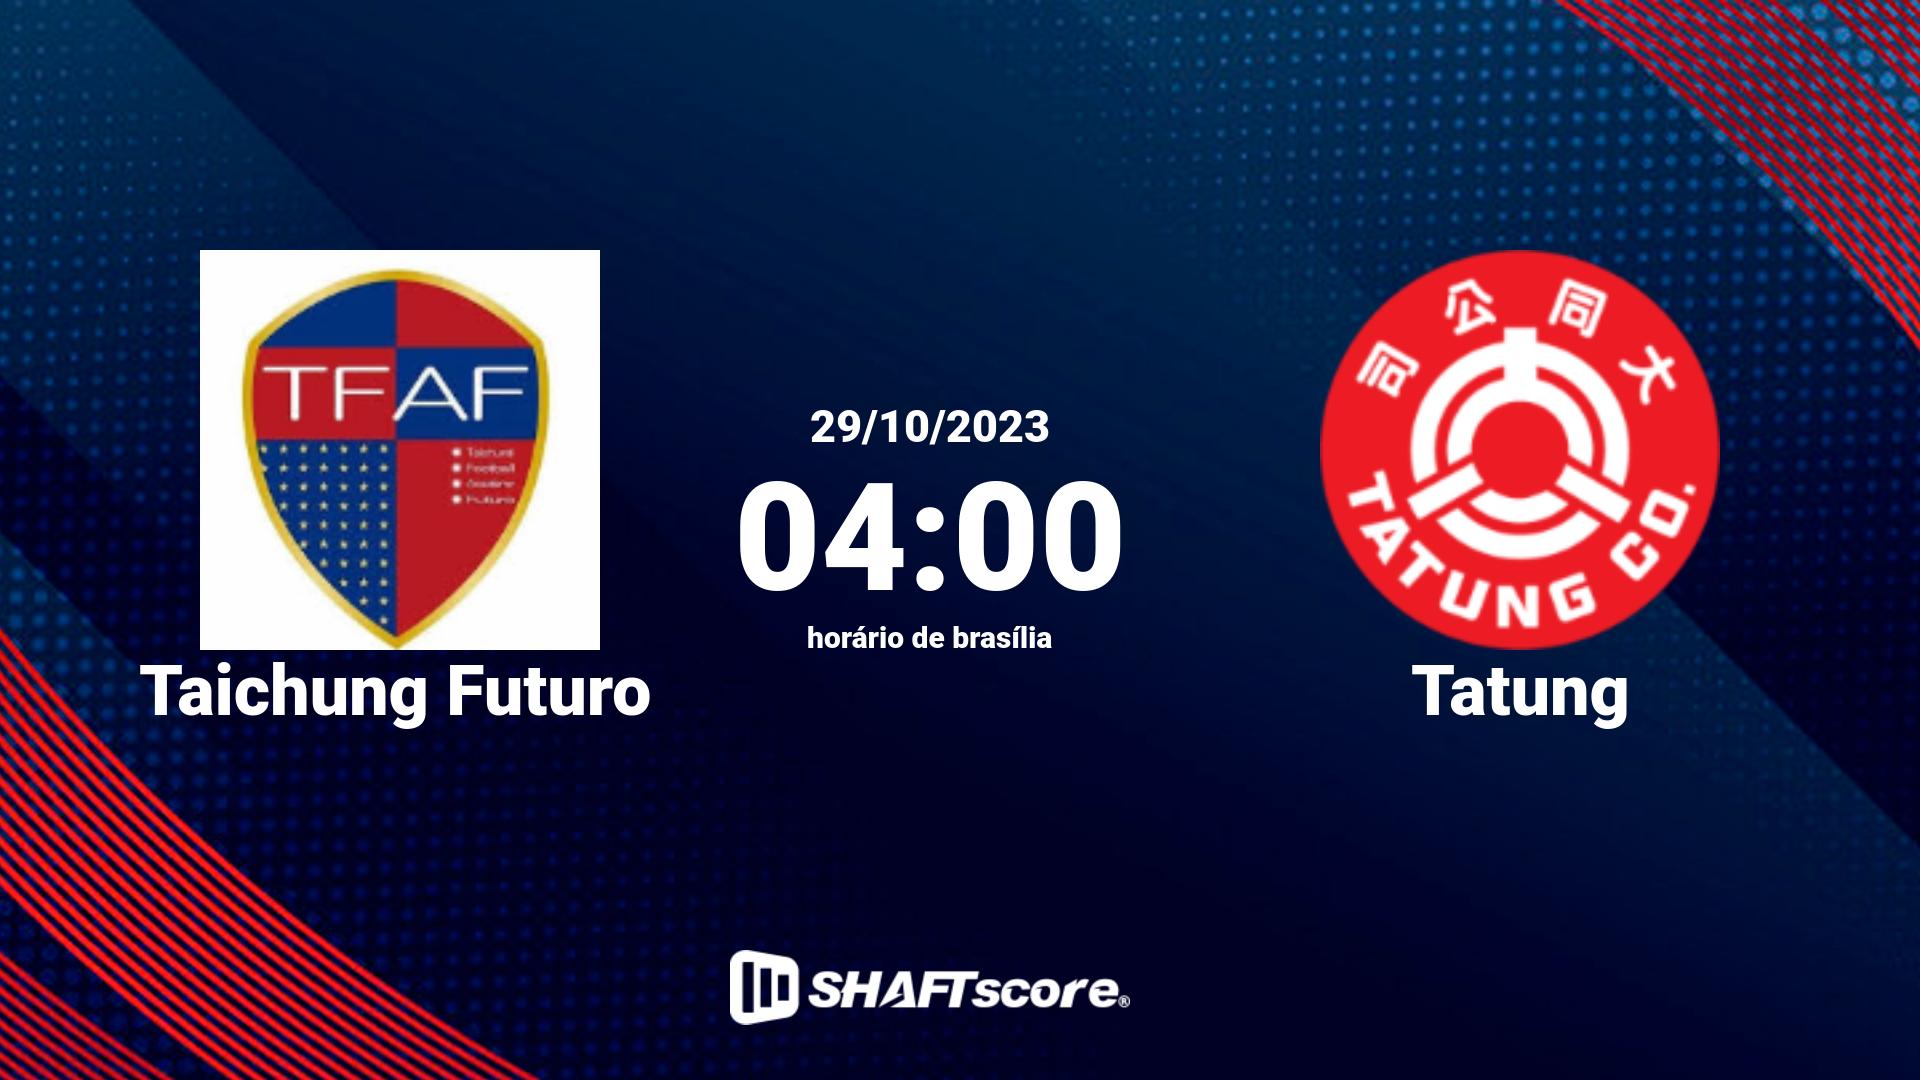 Estatísticas do jogo Taichung Futuro vs Tatung 29.10 04:00